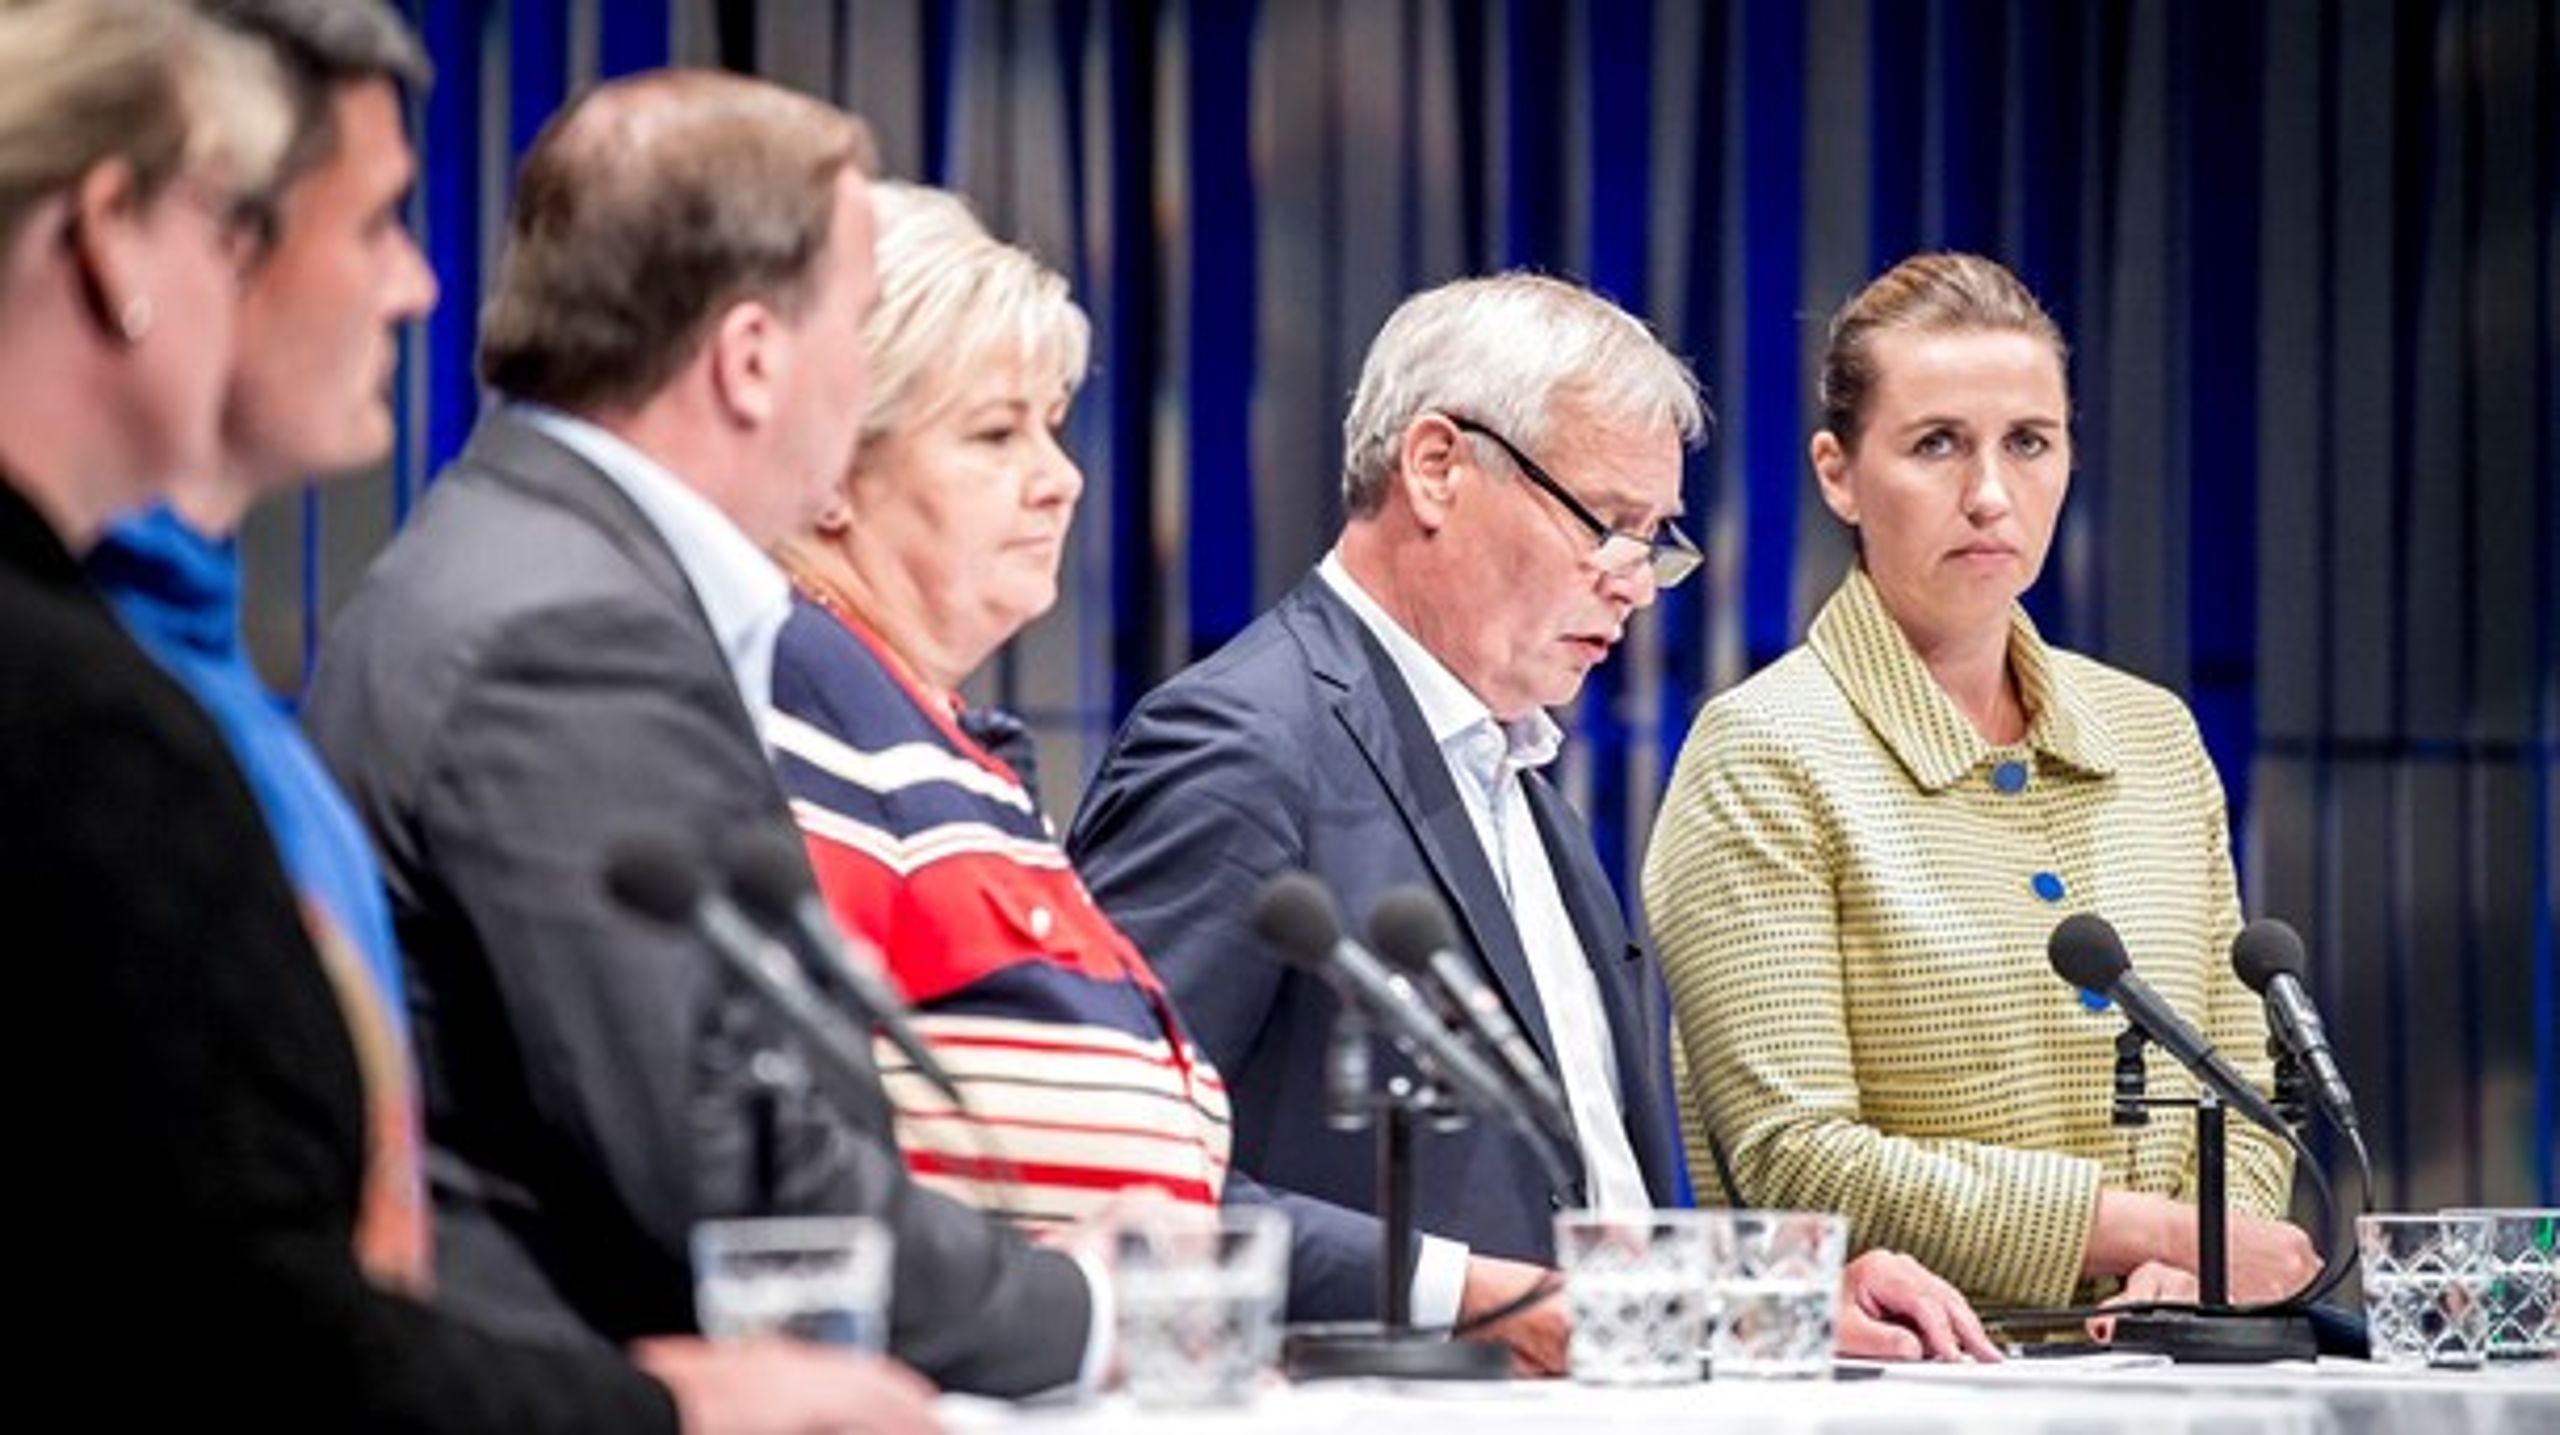 Danmark tilbageholder bidrag til Nordisk Ministerråd, indtil der er sikkerhed for, at der ikke kan foregå svindel med midlerne. Her er Mette Frederiksen (S) til møde med de andre (daværende) nordiske statsministre i Reykjavik i august 2019.